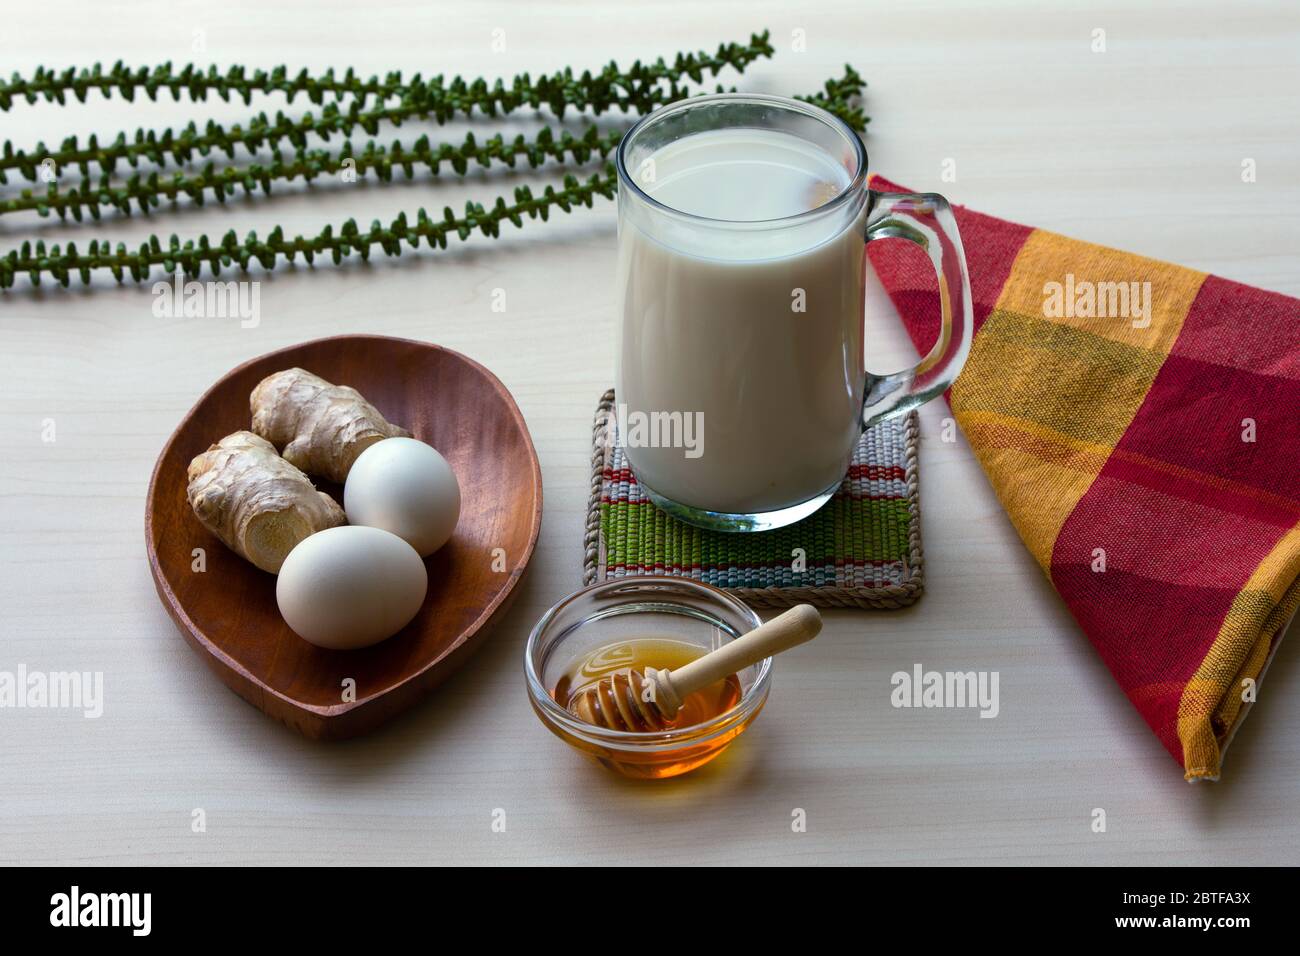 Ein traditionelles Getränk aus Ingwer und rohem Ei. Einige Varianten sind umgangssprachlich in Indonesien als STMJ (Susu Telor Madu Jahe) bekannt. Stockfoto